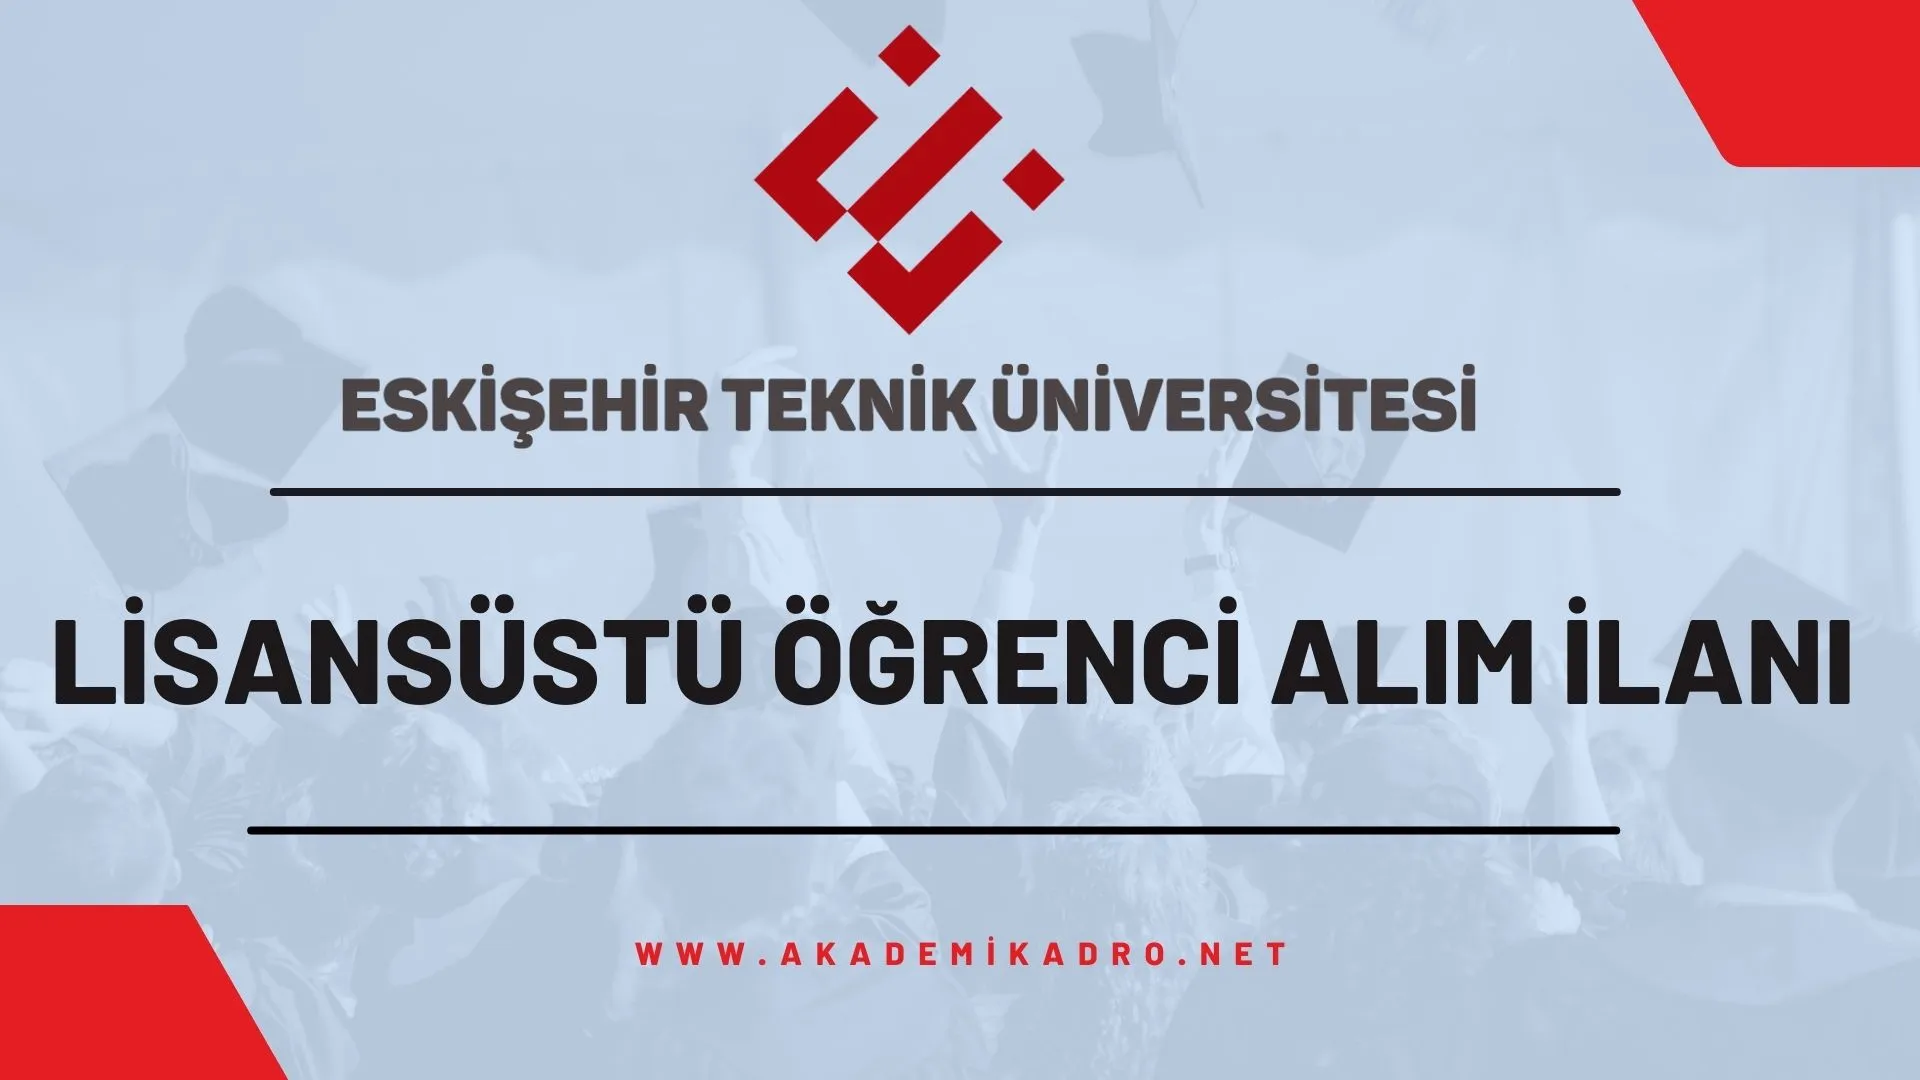 Eskişehir Teknik Üniversitesi 2022-2023 bahar döneminde lisansüstü programlara öğrenci alacaktır.